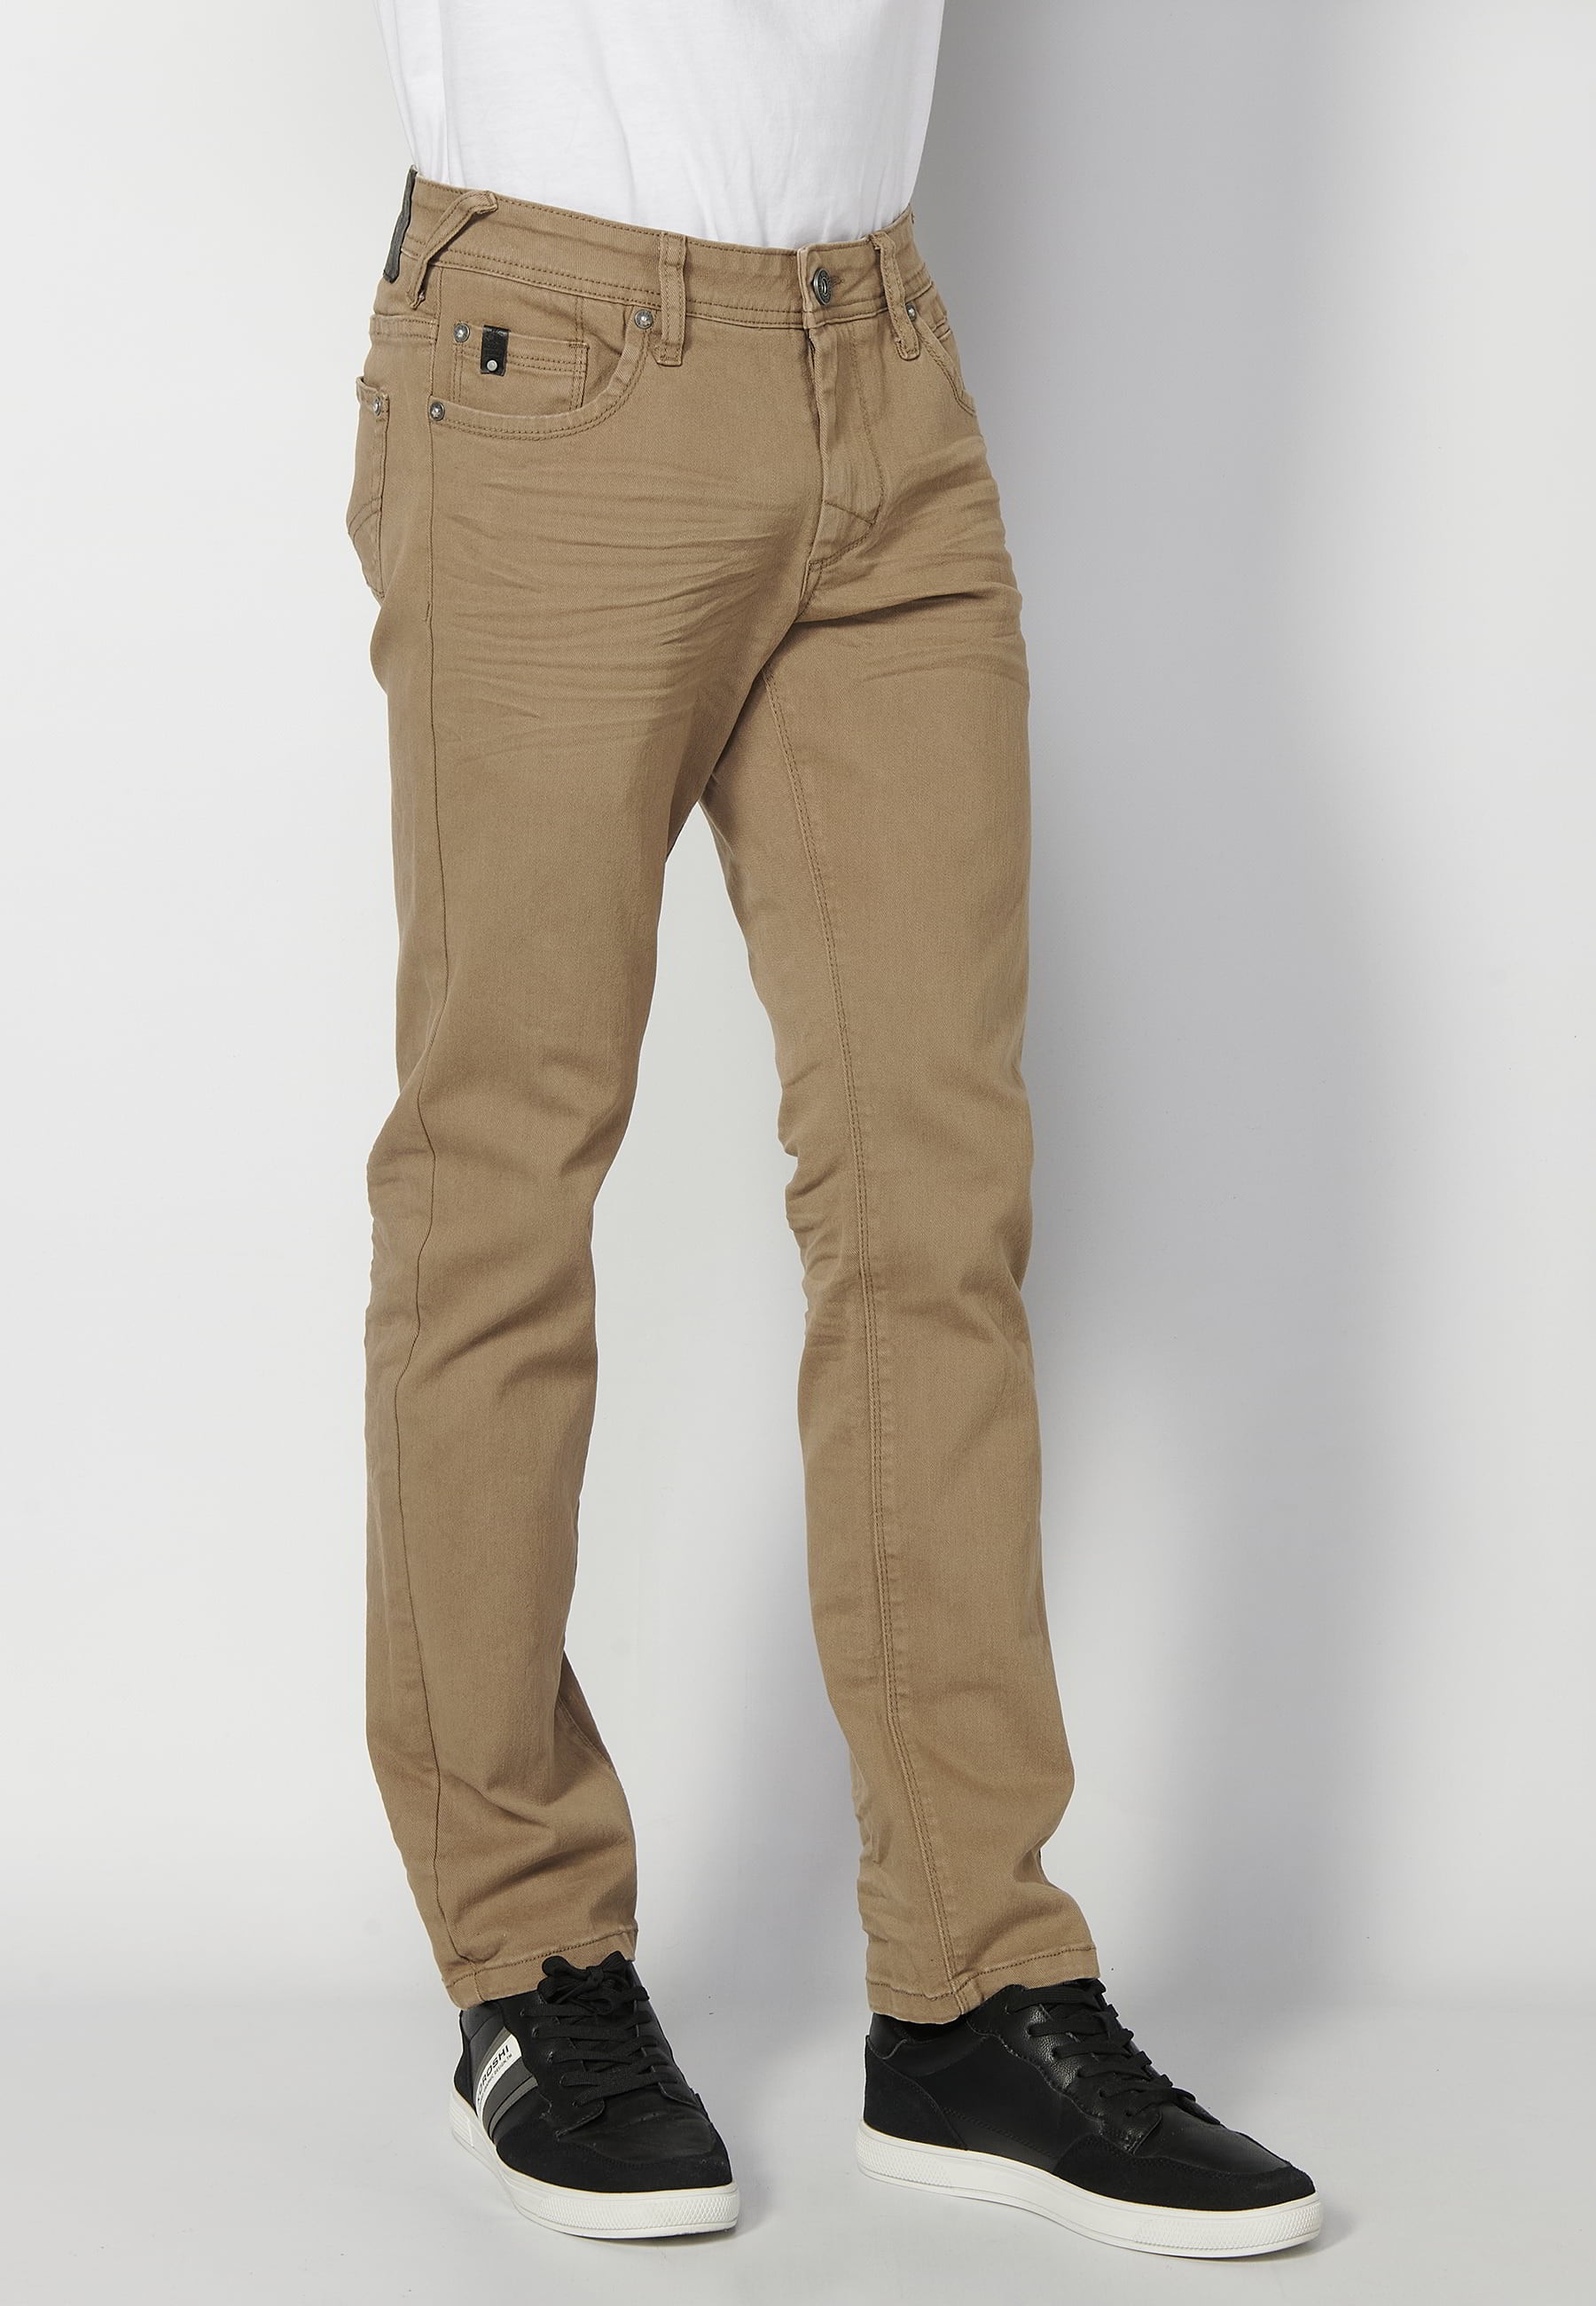 Pantalons llargs strech regular fit, amb cinc butxaques, color Beige, per a Home 3